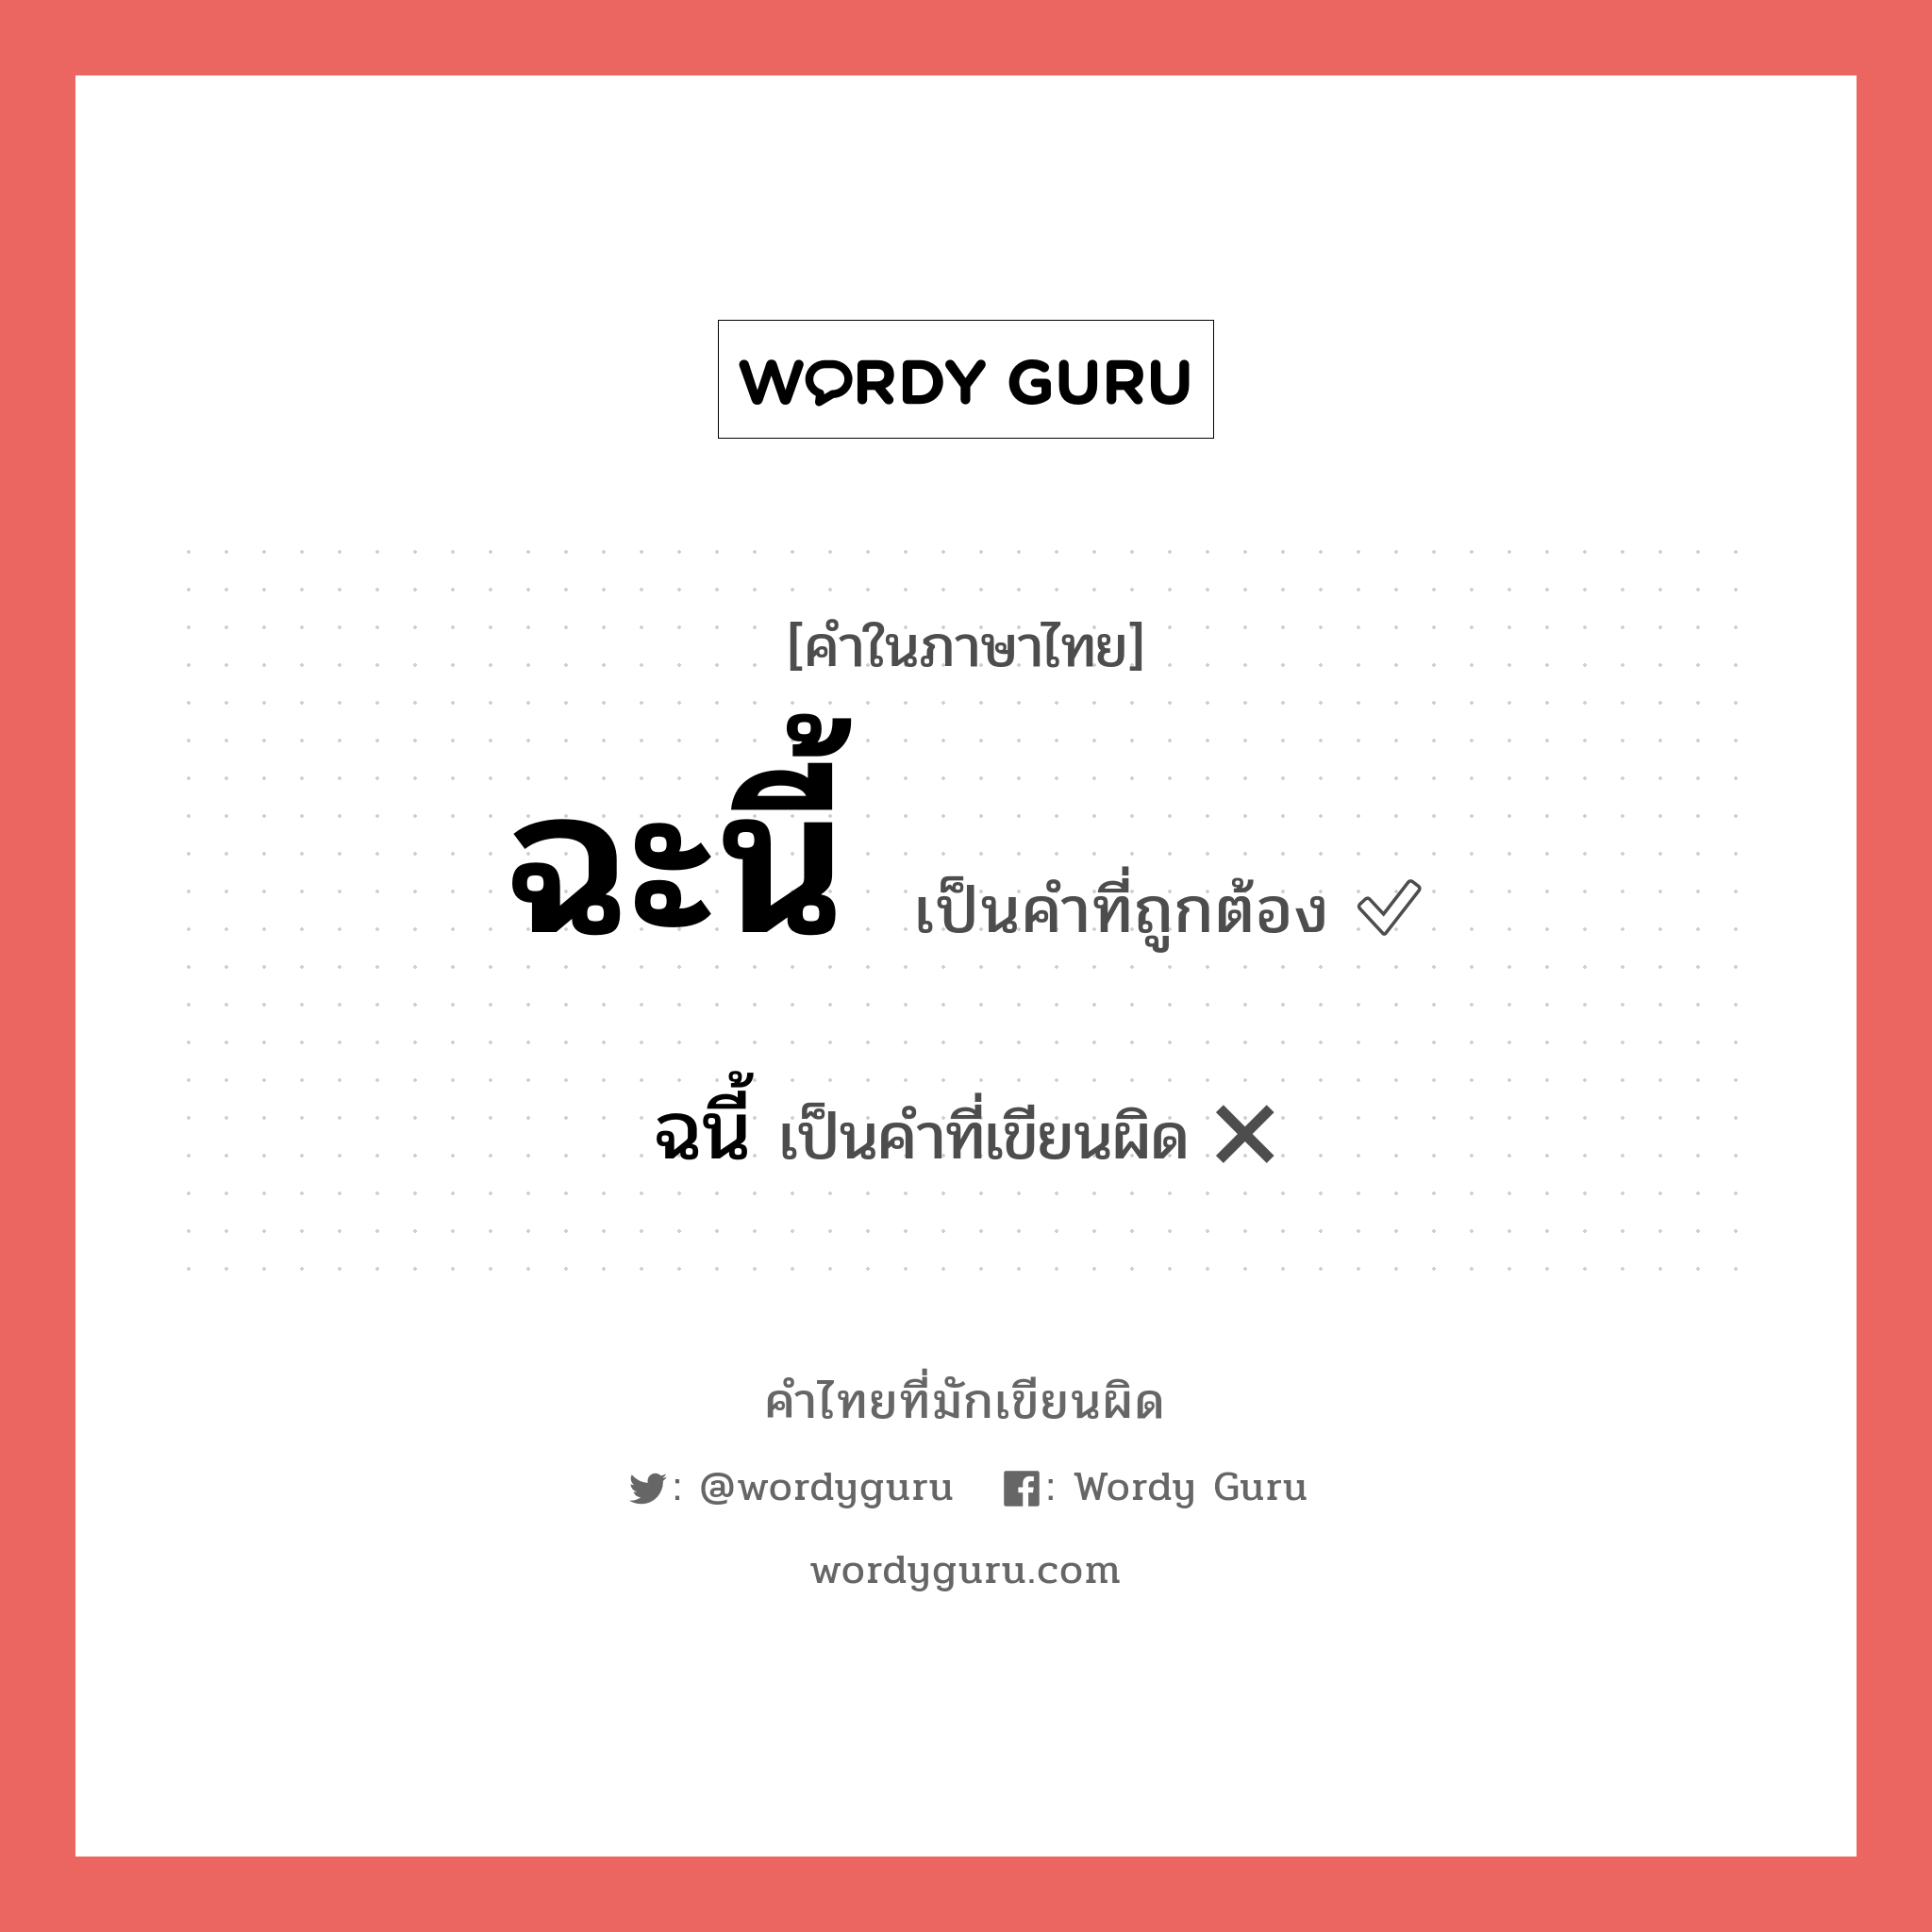 ฉนี้ หรือ ฉะนี้ คำไหนเขียนถูก?, คำในภาษาไทยที่มักเขียนผิด ฉนี้ คำที่ผิด ❌ ฉะนี้